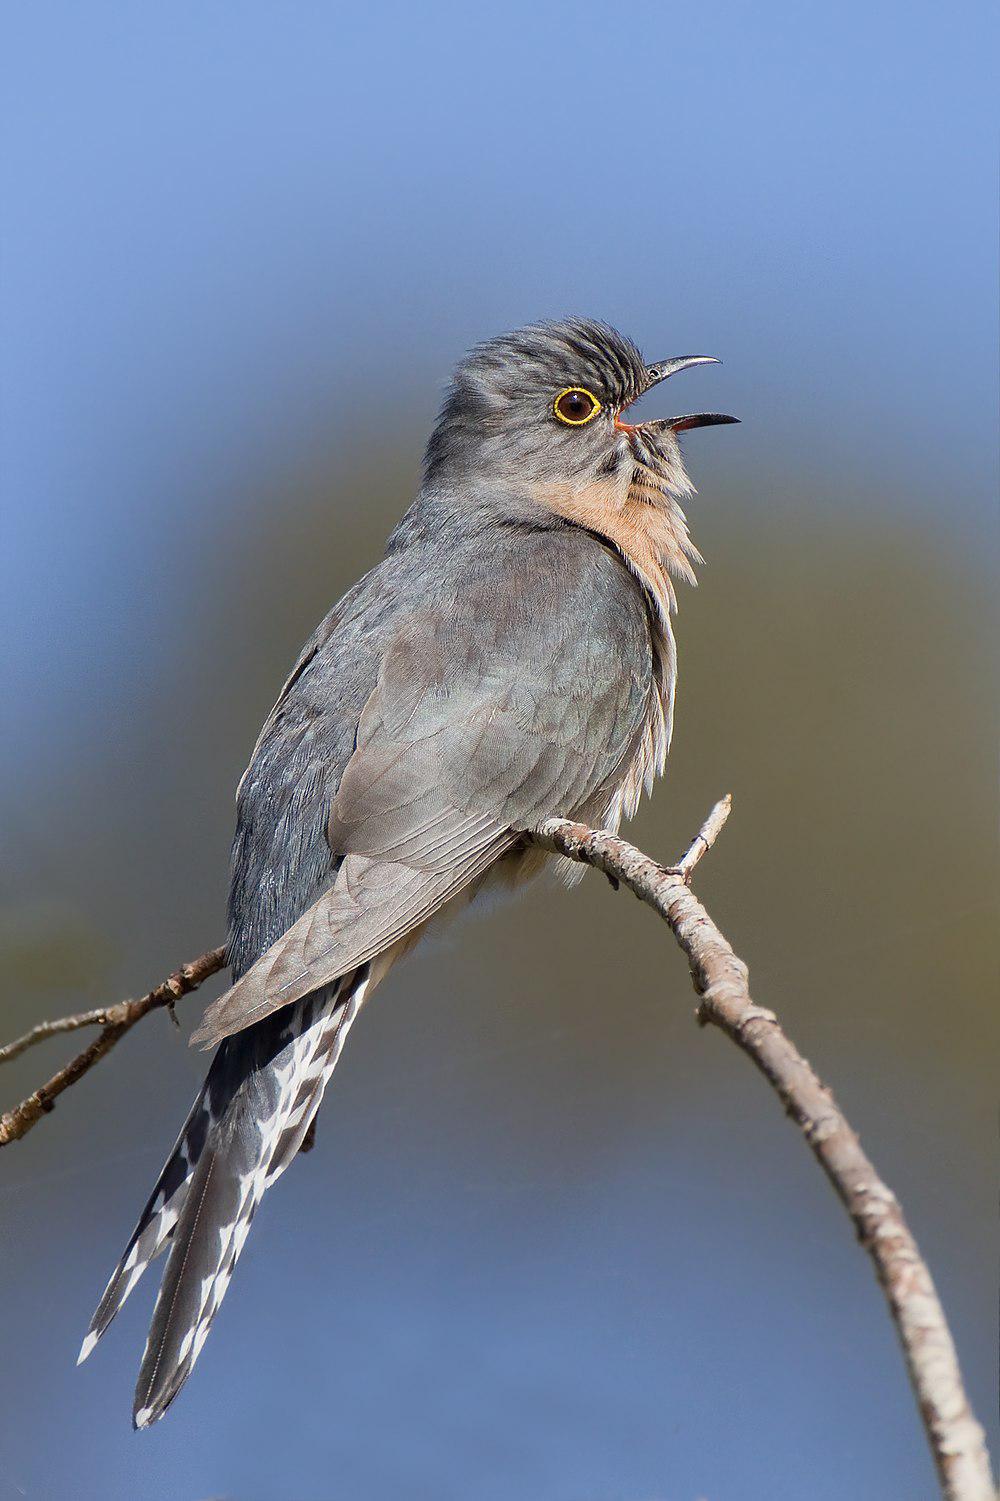 扇尾杜鹃 / Fan-tailed Cuckoo / Cacomantis flabelliformis